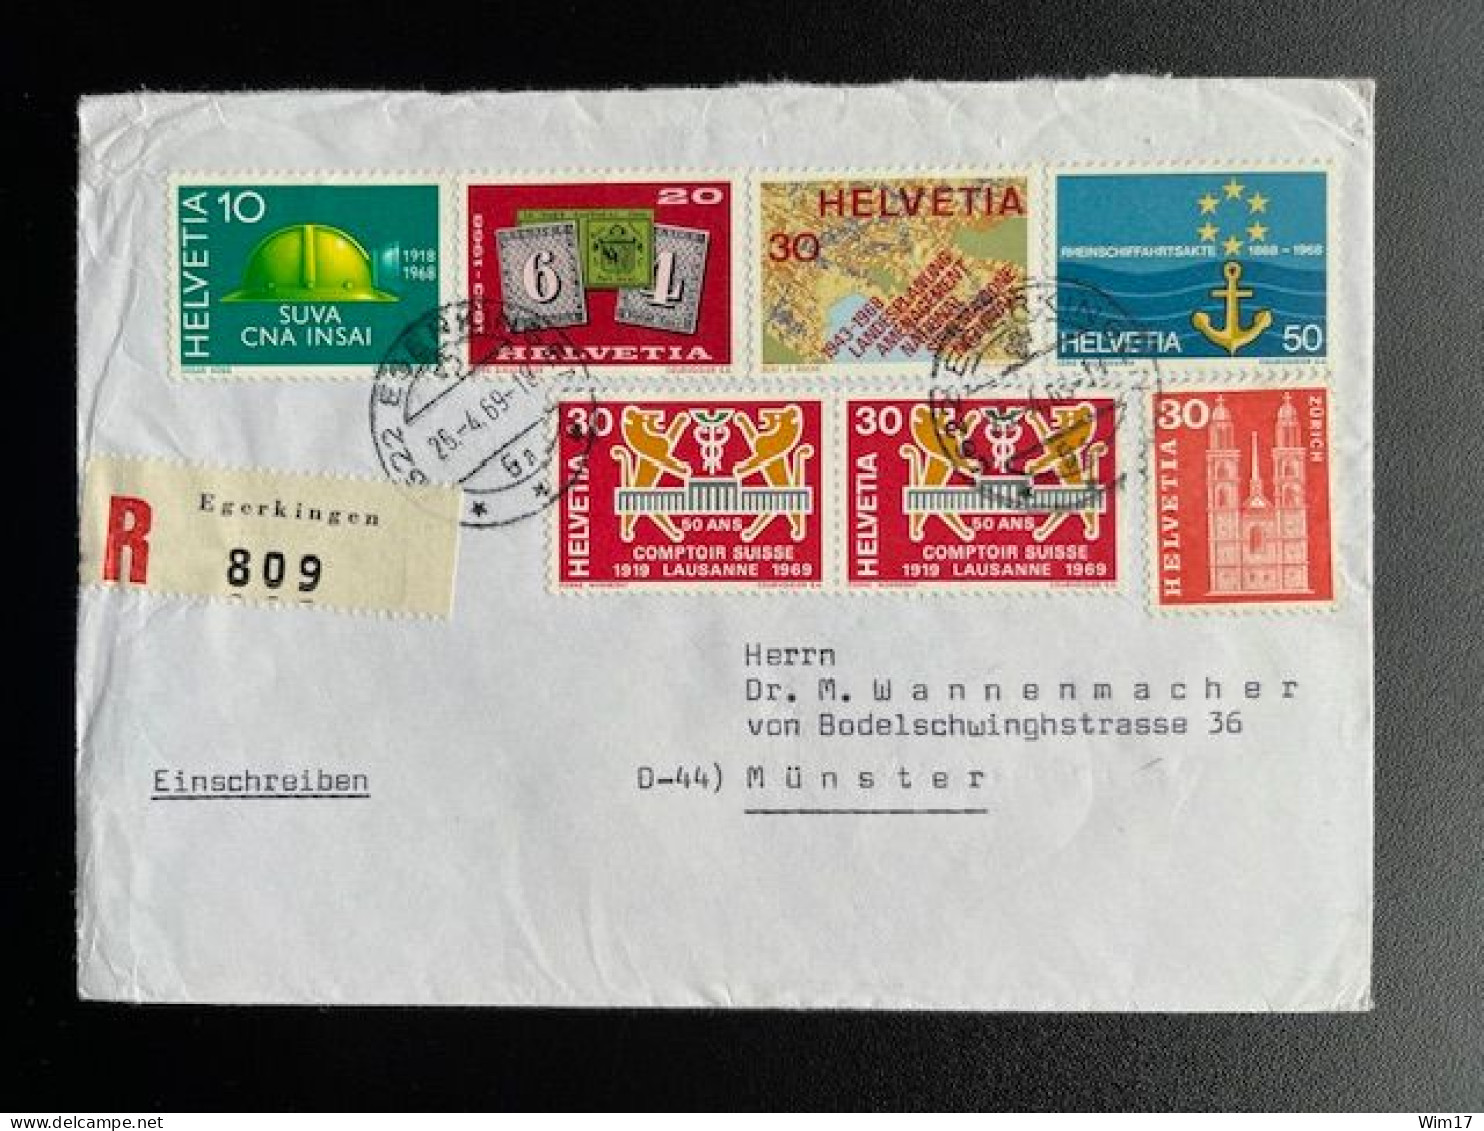 SWITZERLAND 1969 REGISTERED LETTER EGERKINGEN TO MUNSTER 25-04-1969 ZWITSERLAND SUISSE SCHWEIZ EINSCHREIBEN - Unused Stamps